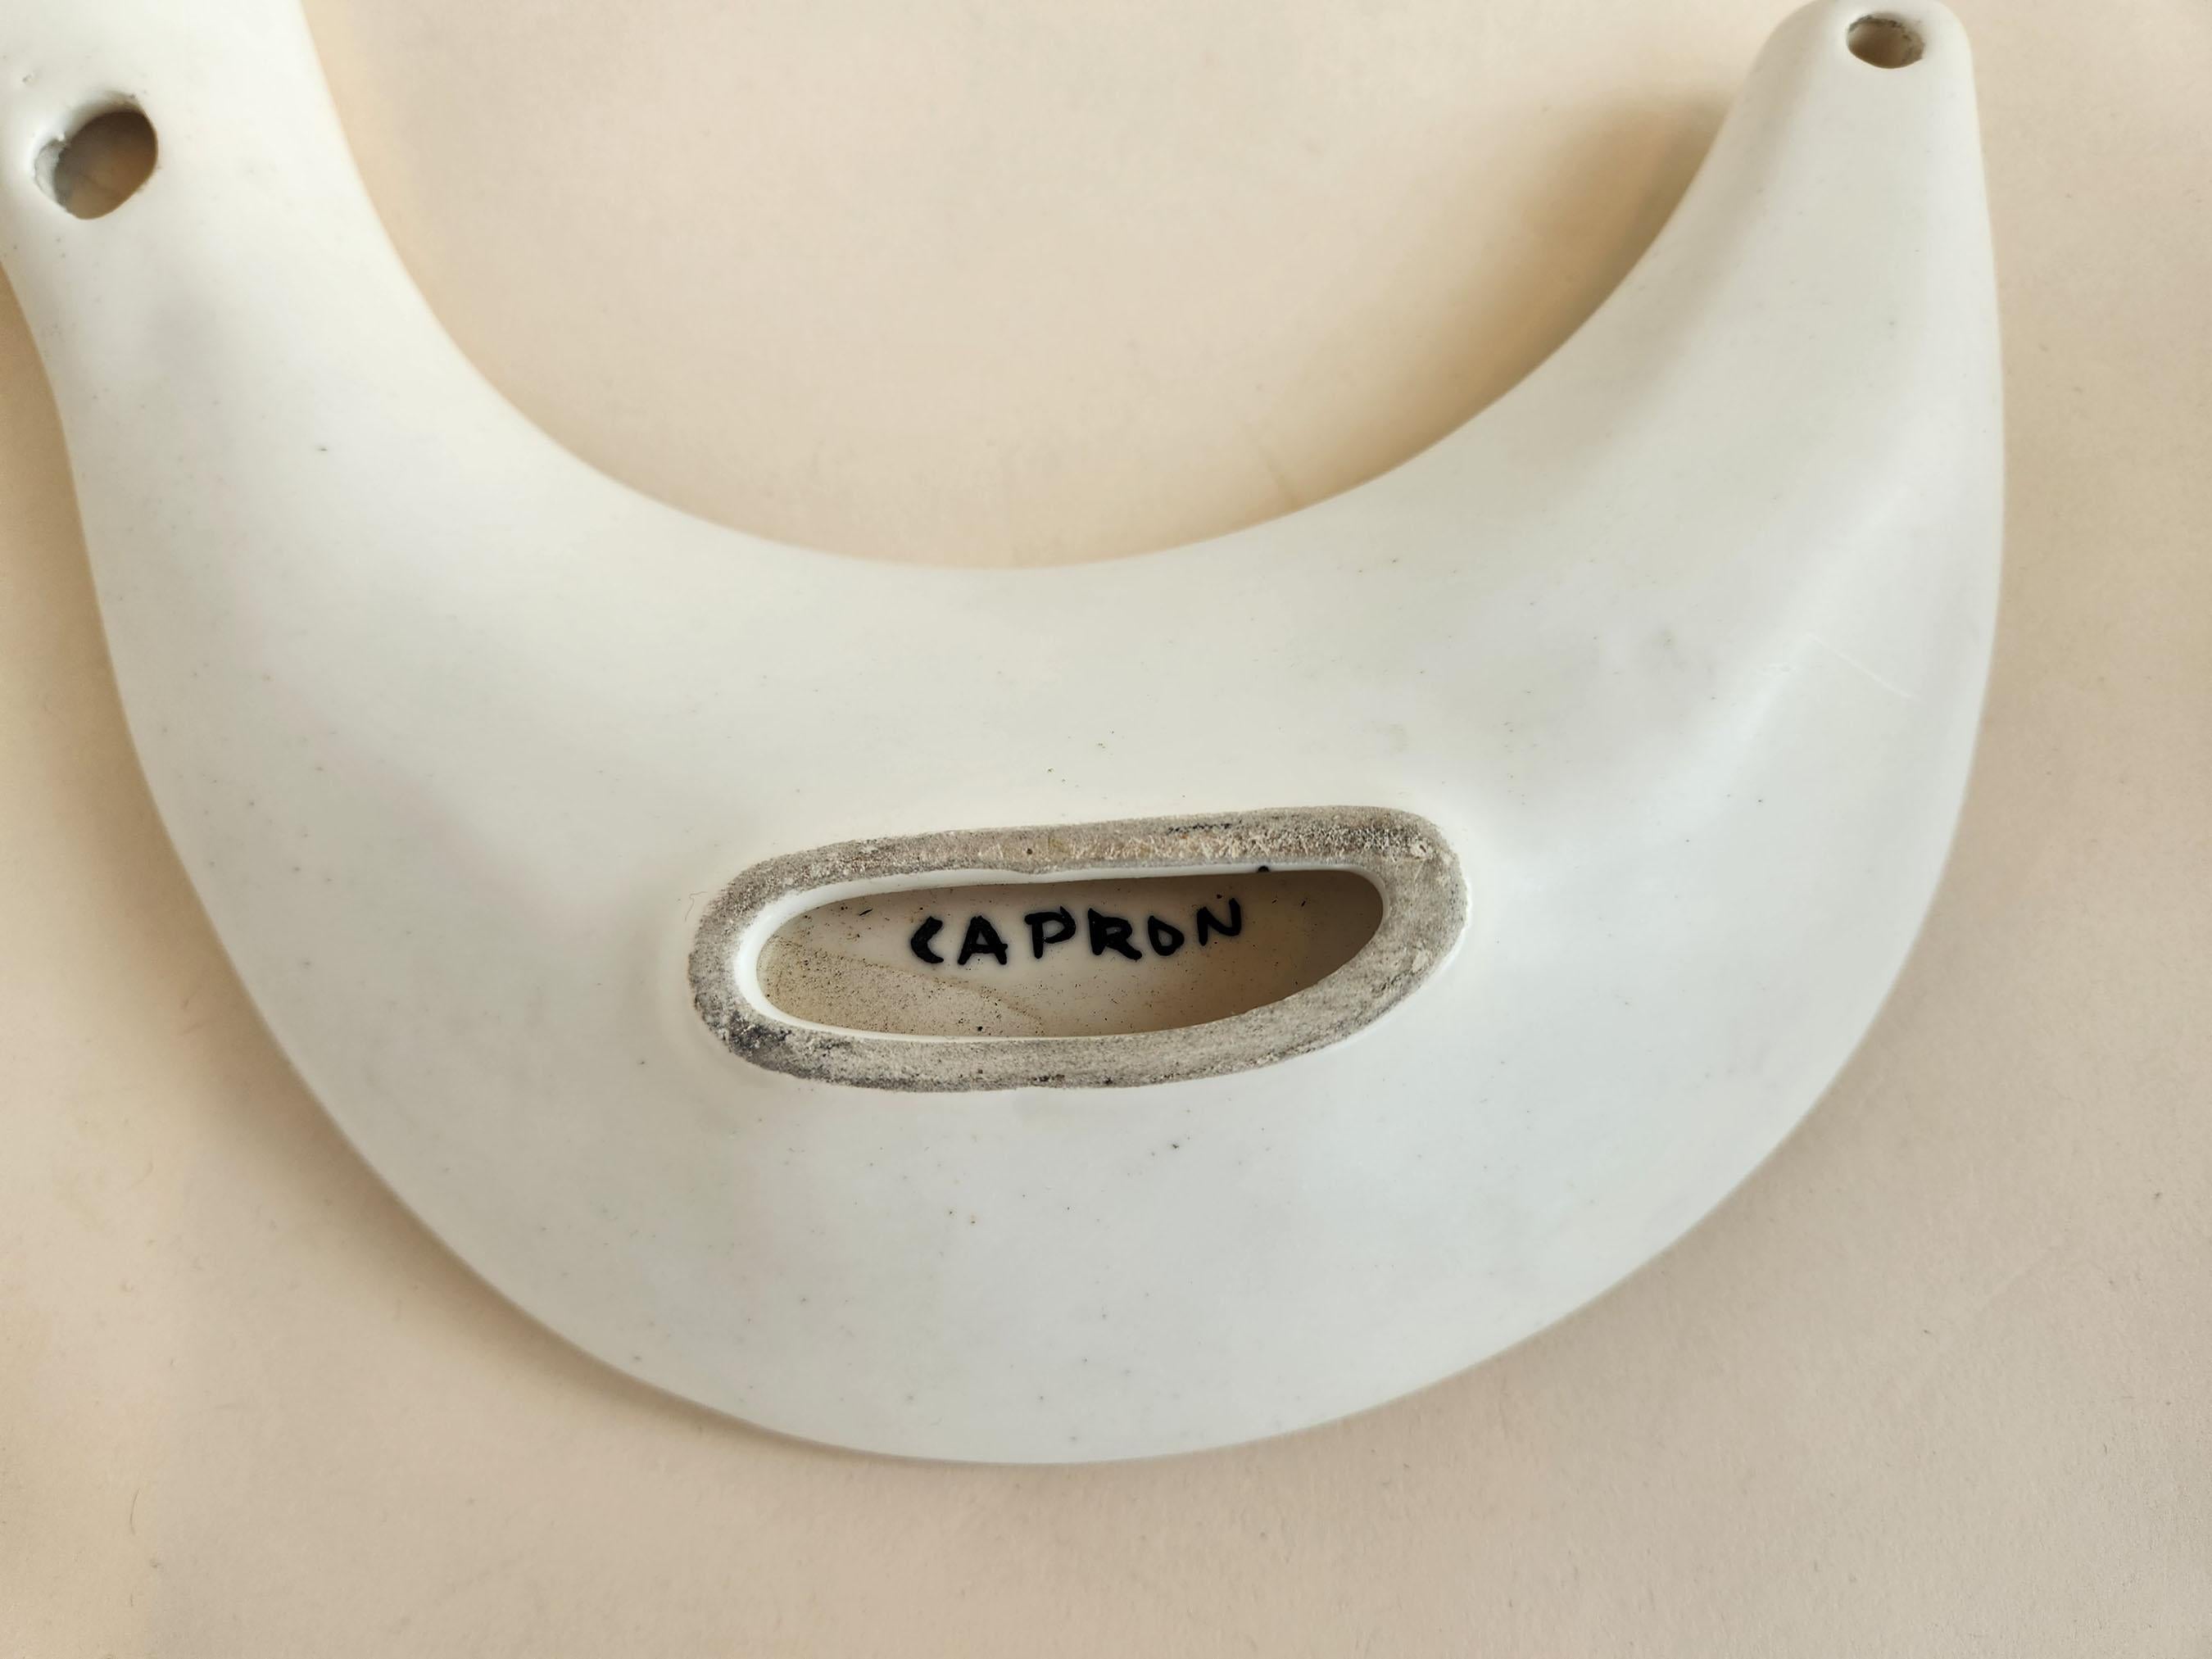 Roger Capron - Vintage S-shaped Ceramic Serving Platter For Sale 2